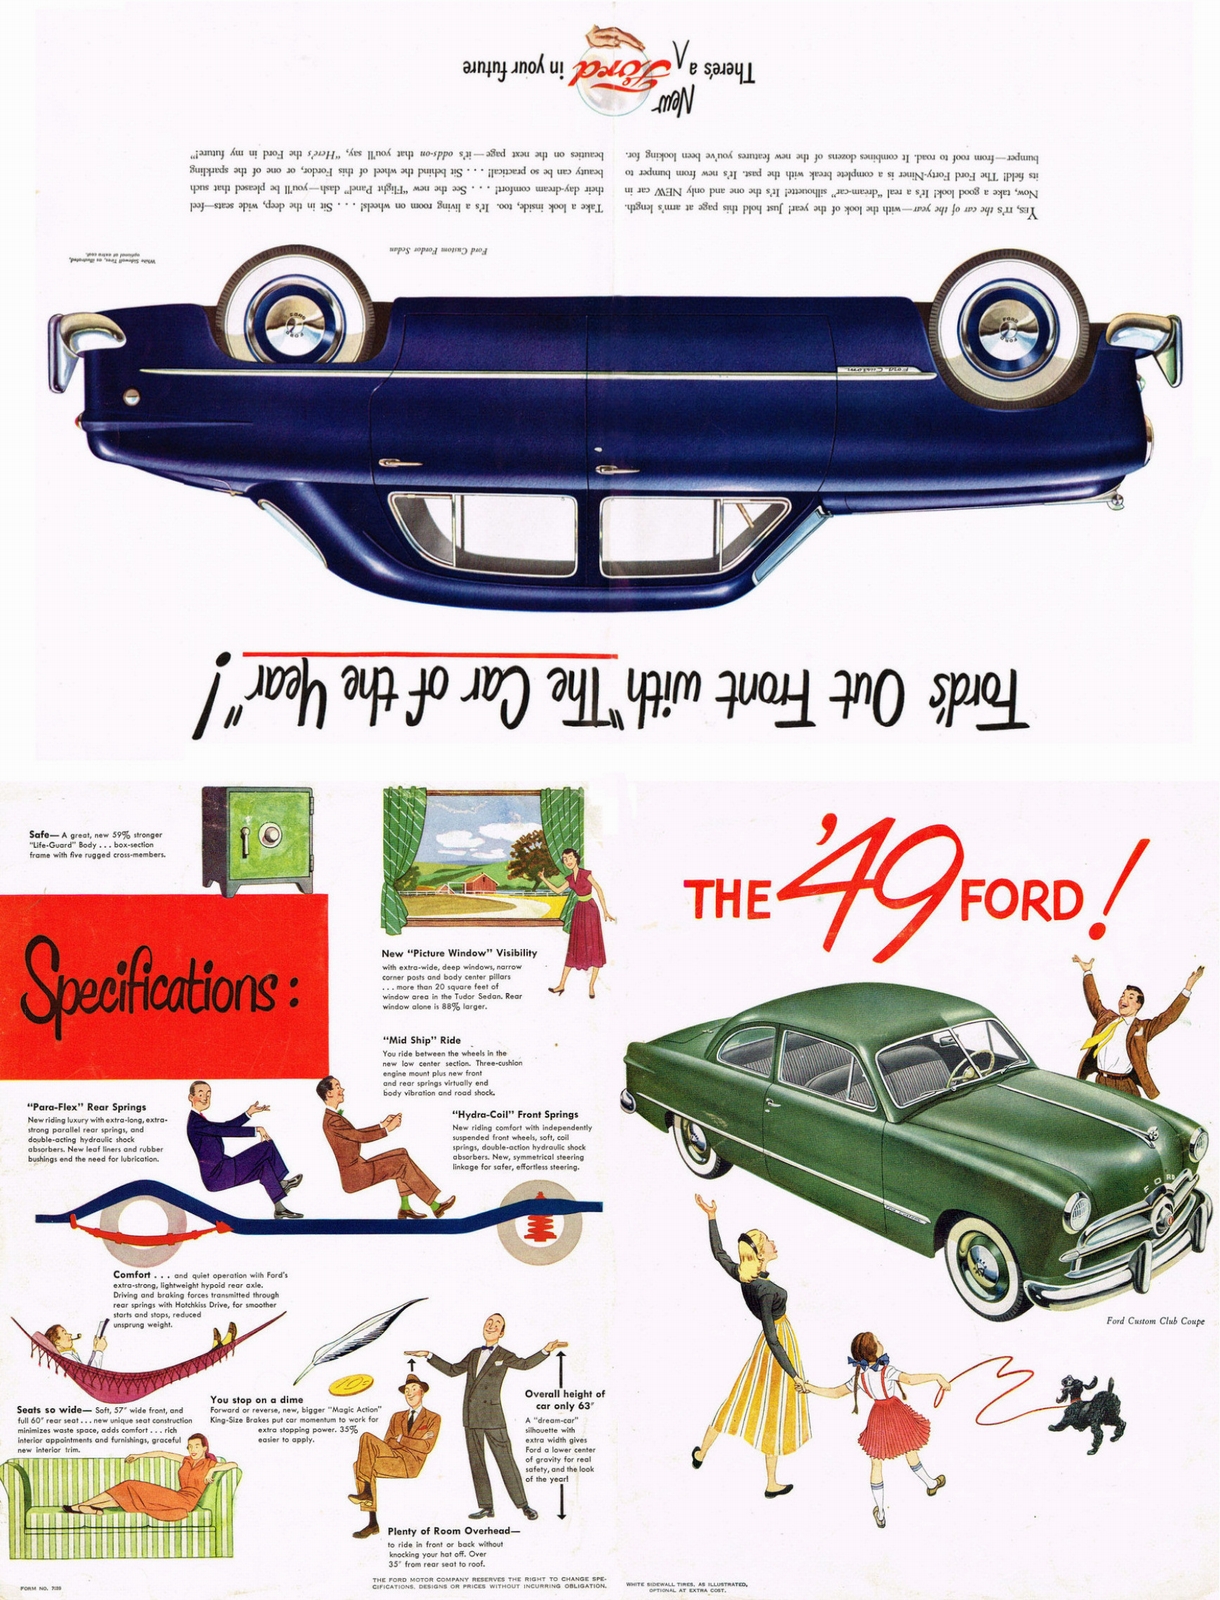 n_1949 Ford Foldout-Side A1.jpg